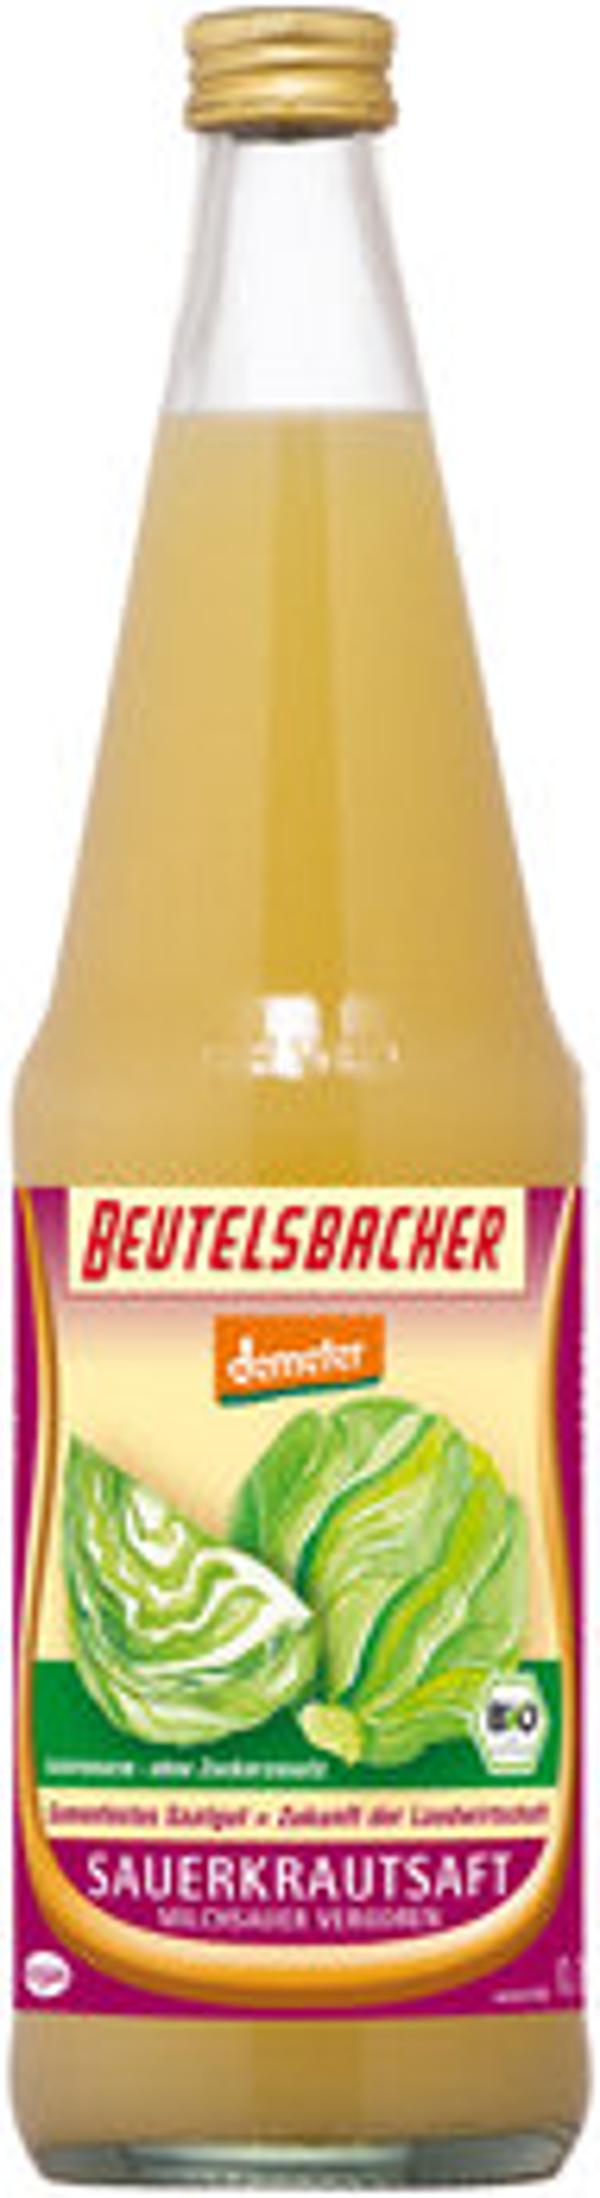 Produktfoto zu Sauerkrautsaft milchsauer, 0,7 l